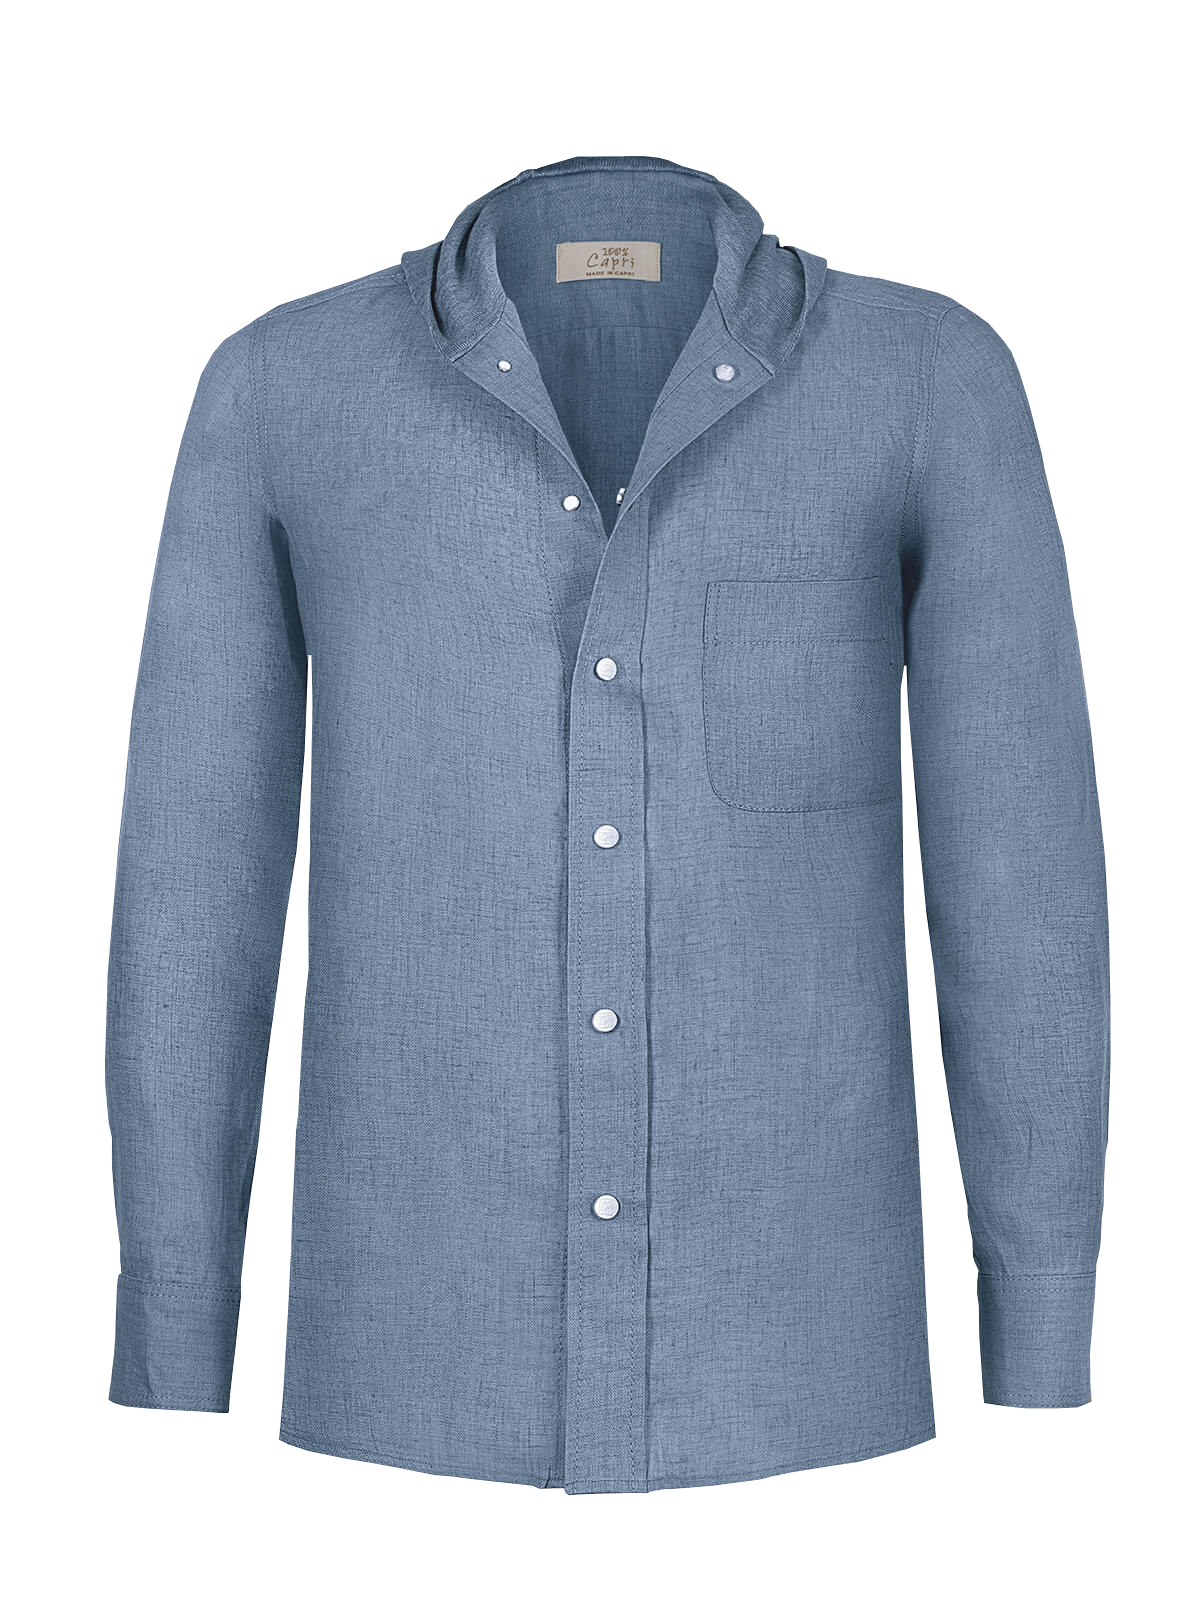 Camicia Cappuccio 100% Capri jeans linen t-shirt front